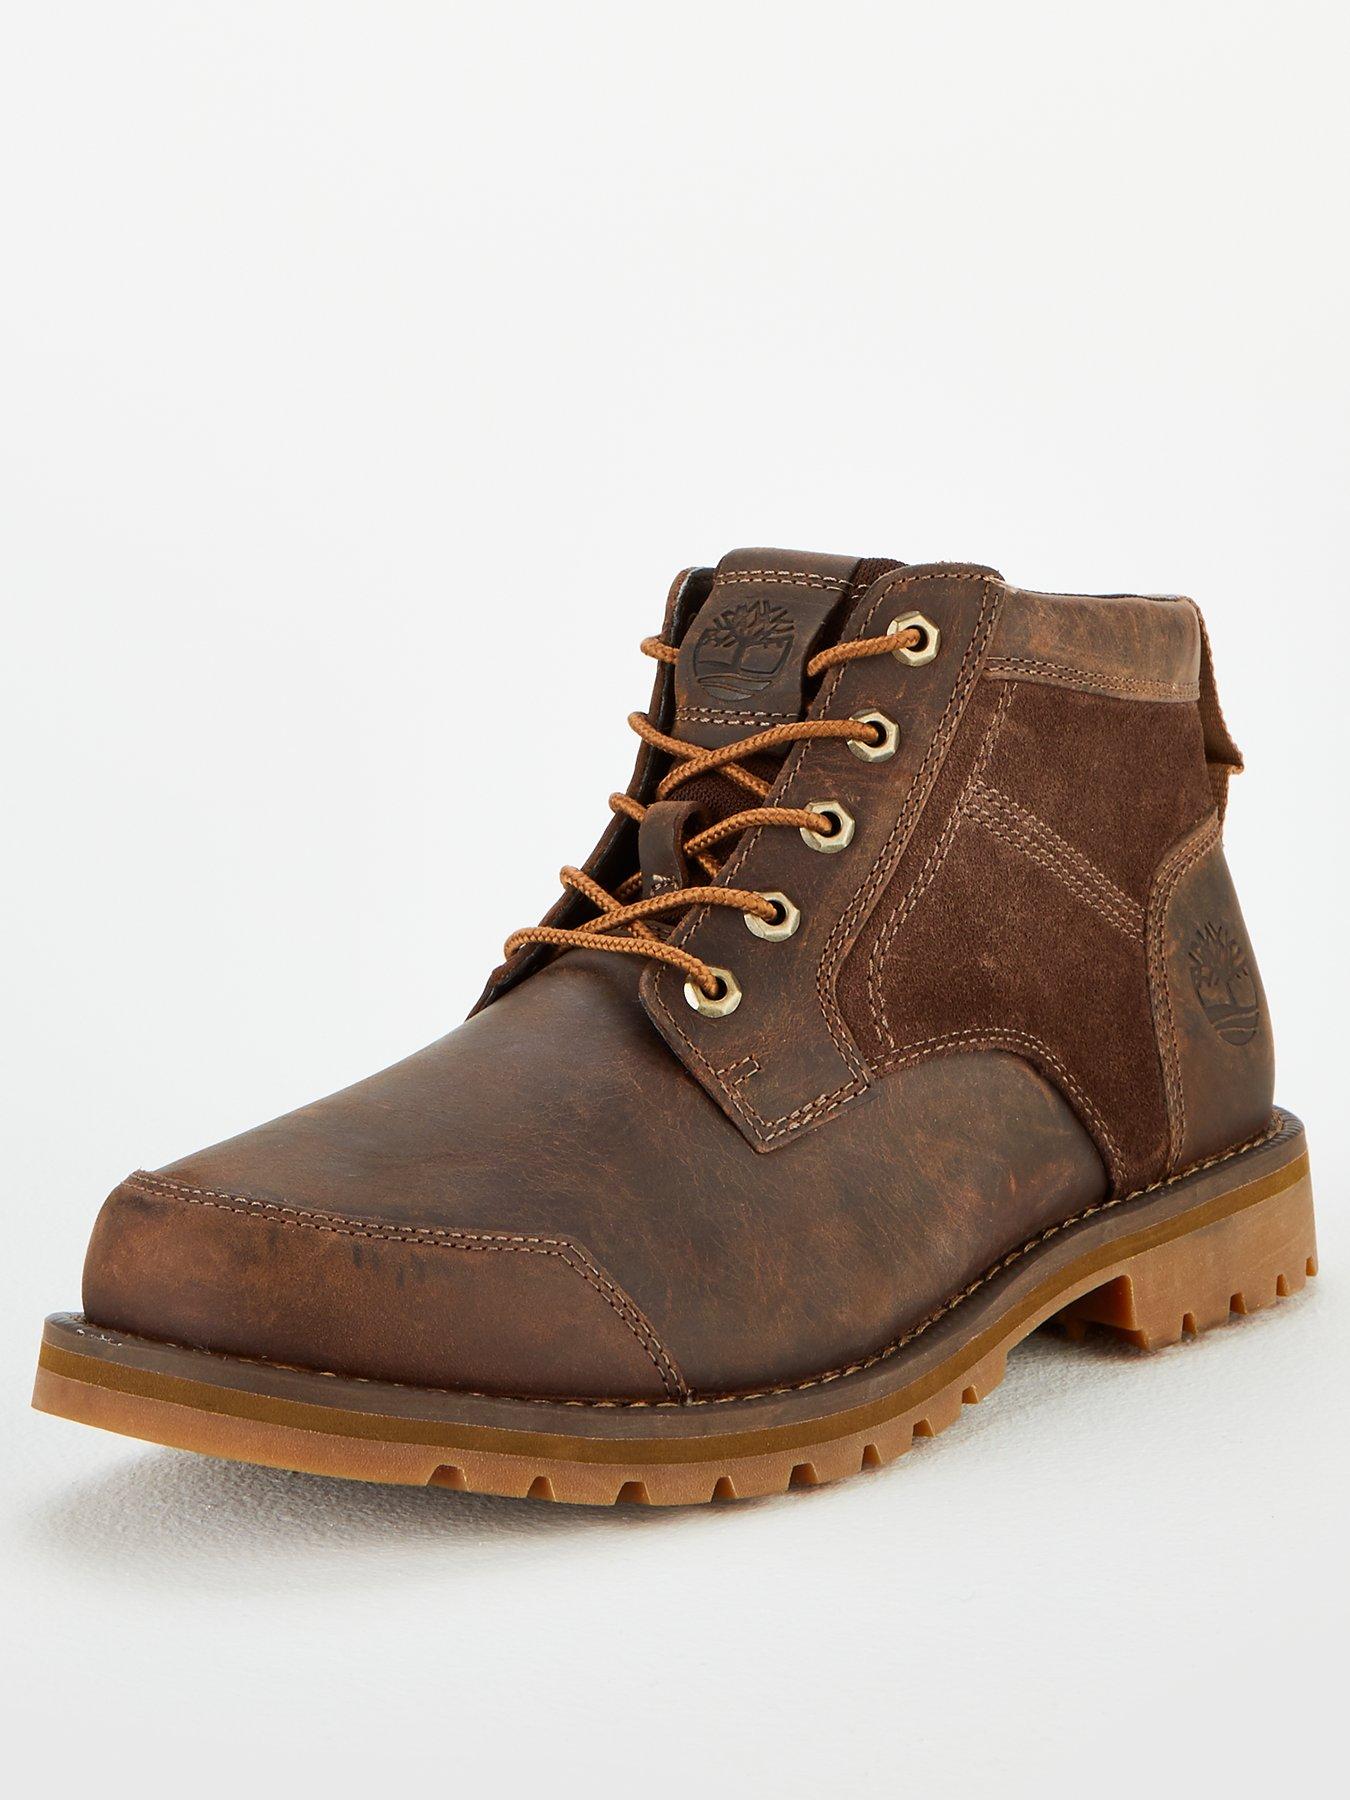 timberland work boots ireland cheap online